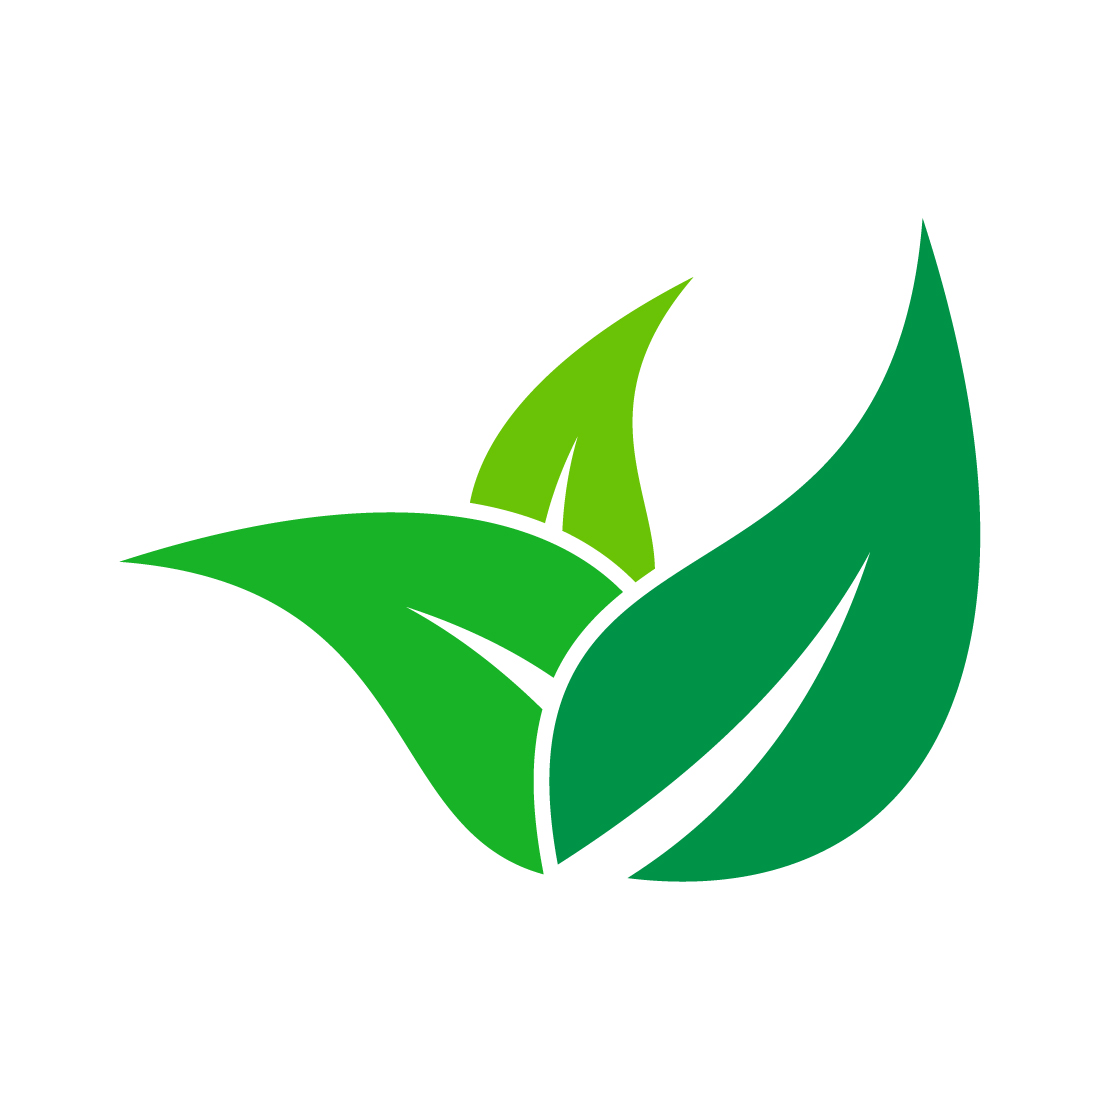 Premium Vector  Green leaf nature plant conceptual symbol vector